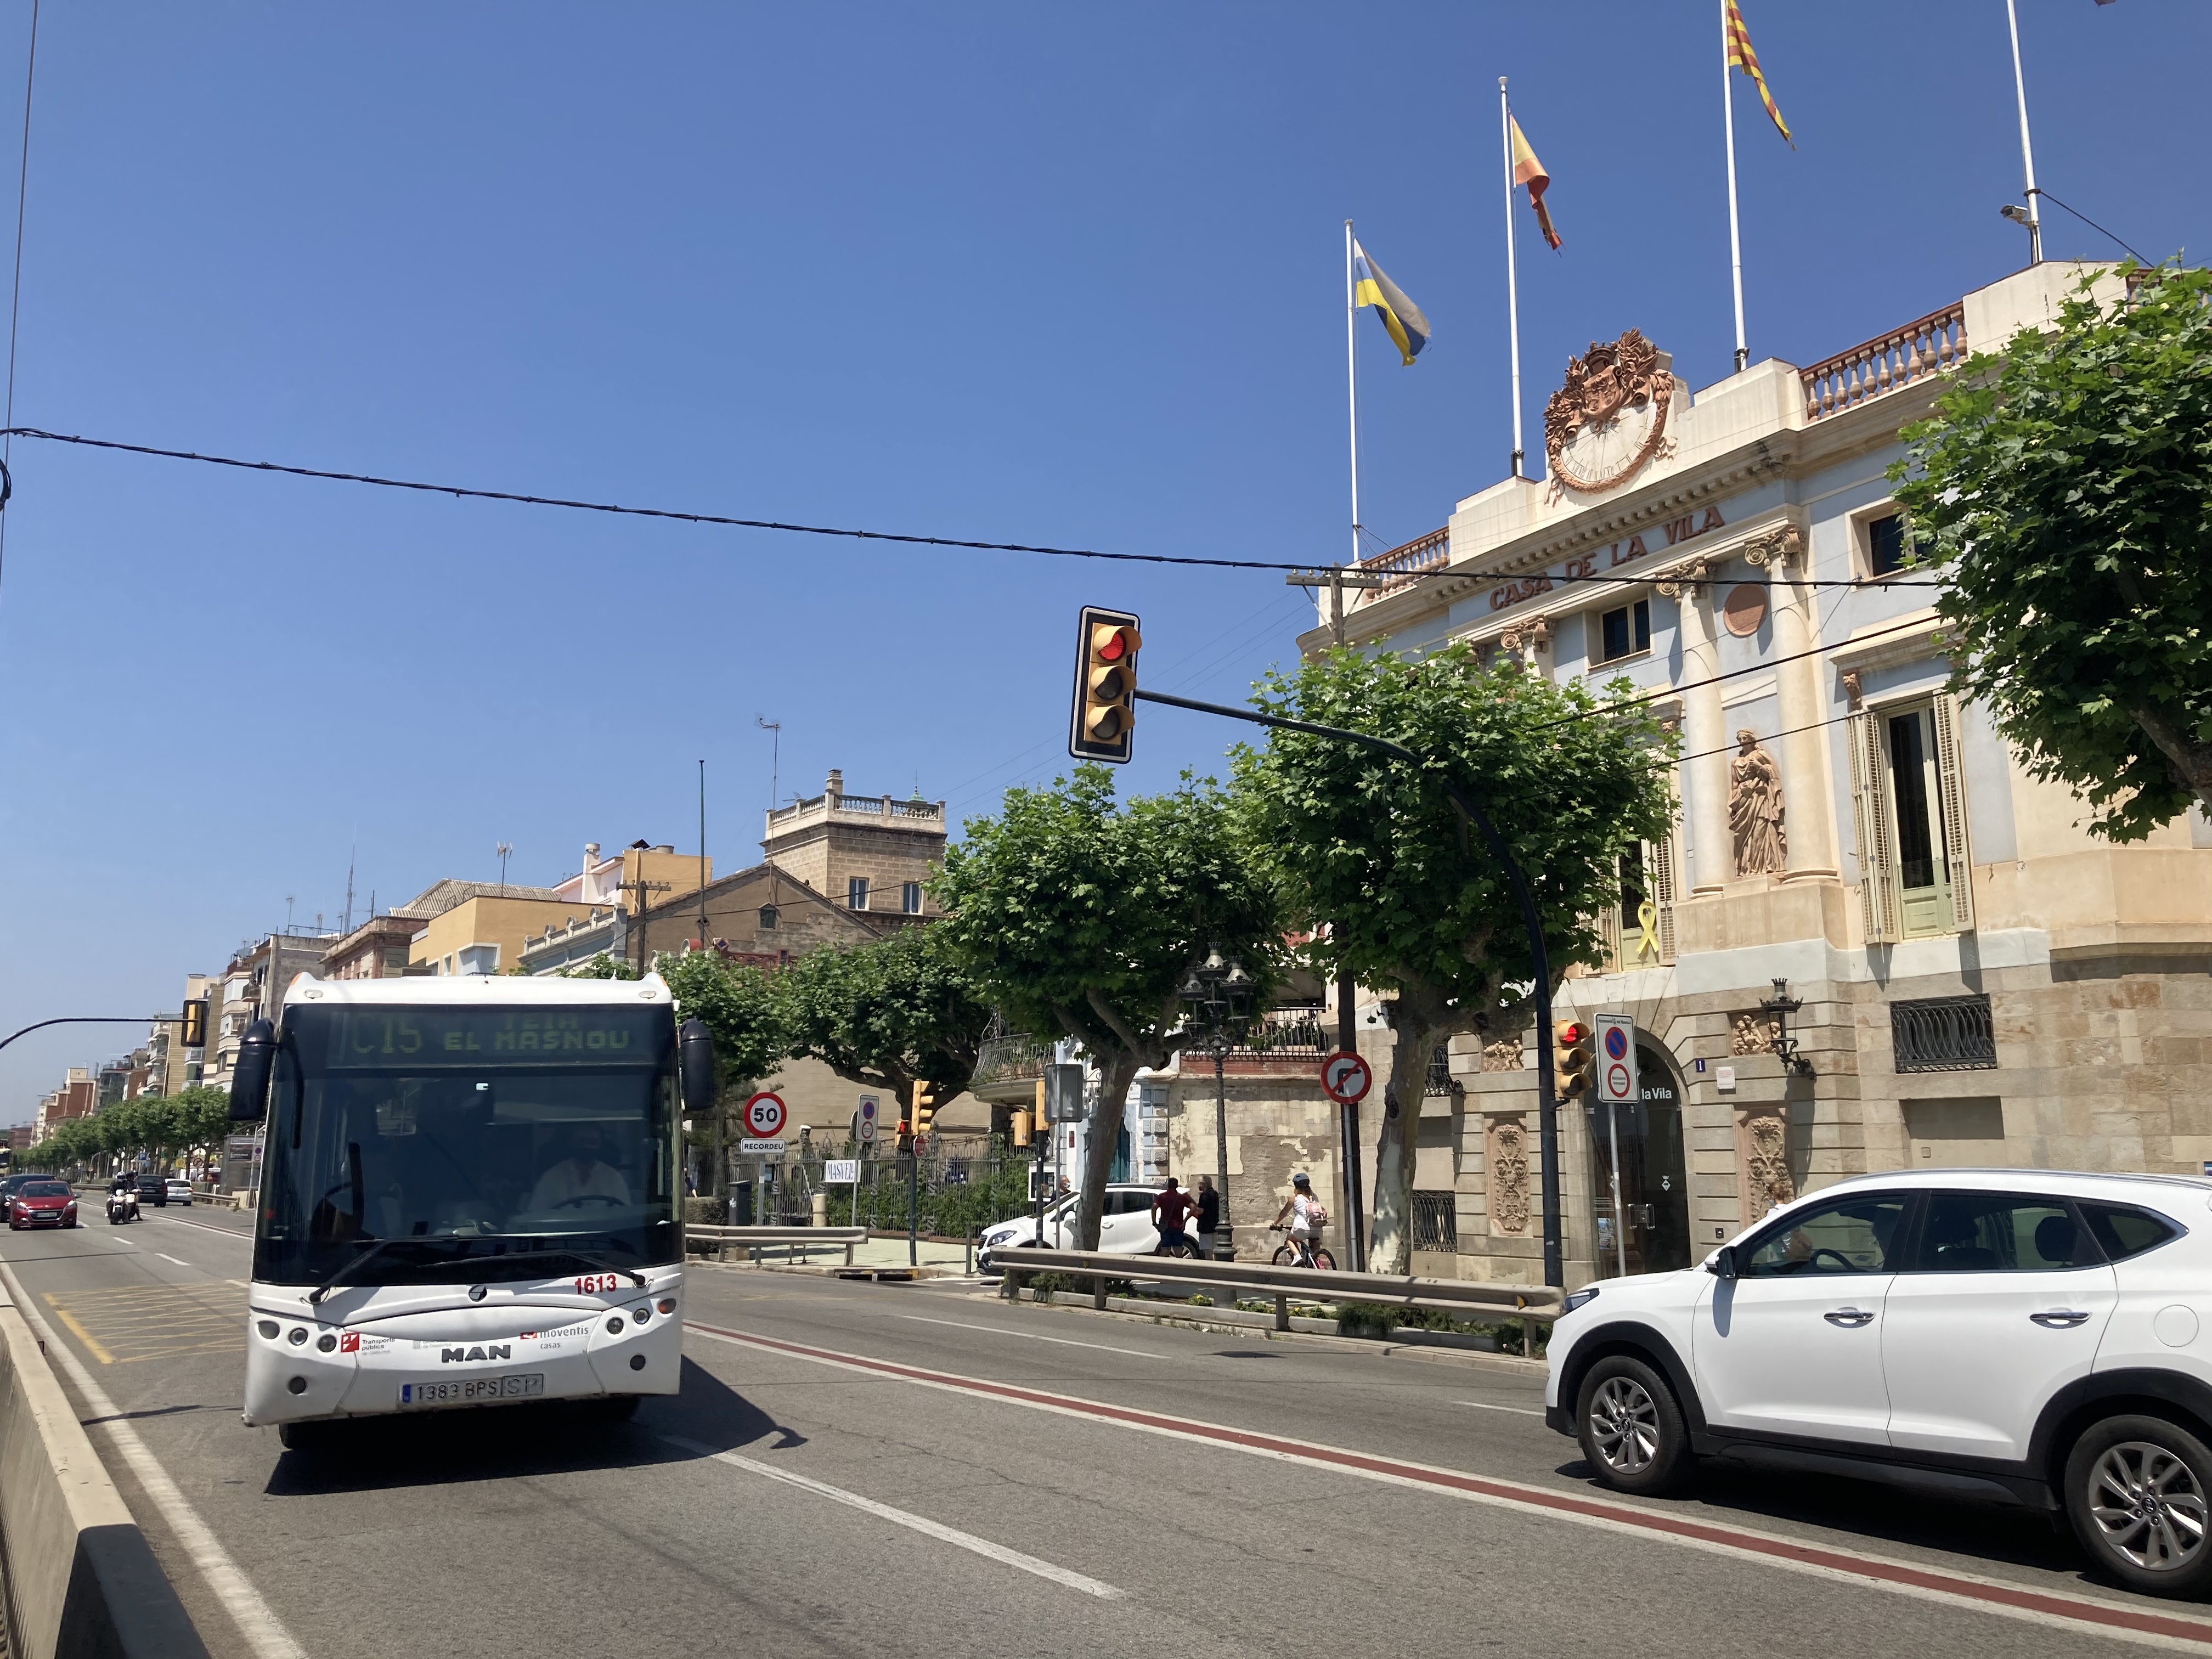 Durant la trobada, convocada a petició del consistori masnoví, es van exposar un seguit de dades que reflecteixen un increment notable i sostingut de passatgers de les línies d'autobús al seu pas pel Masnou i en direcció a Barcelona